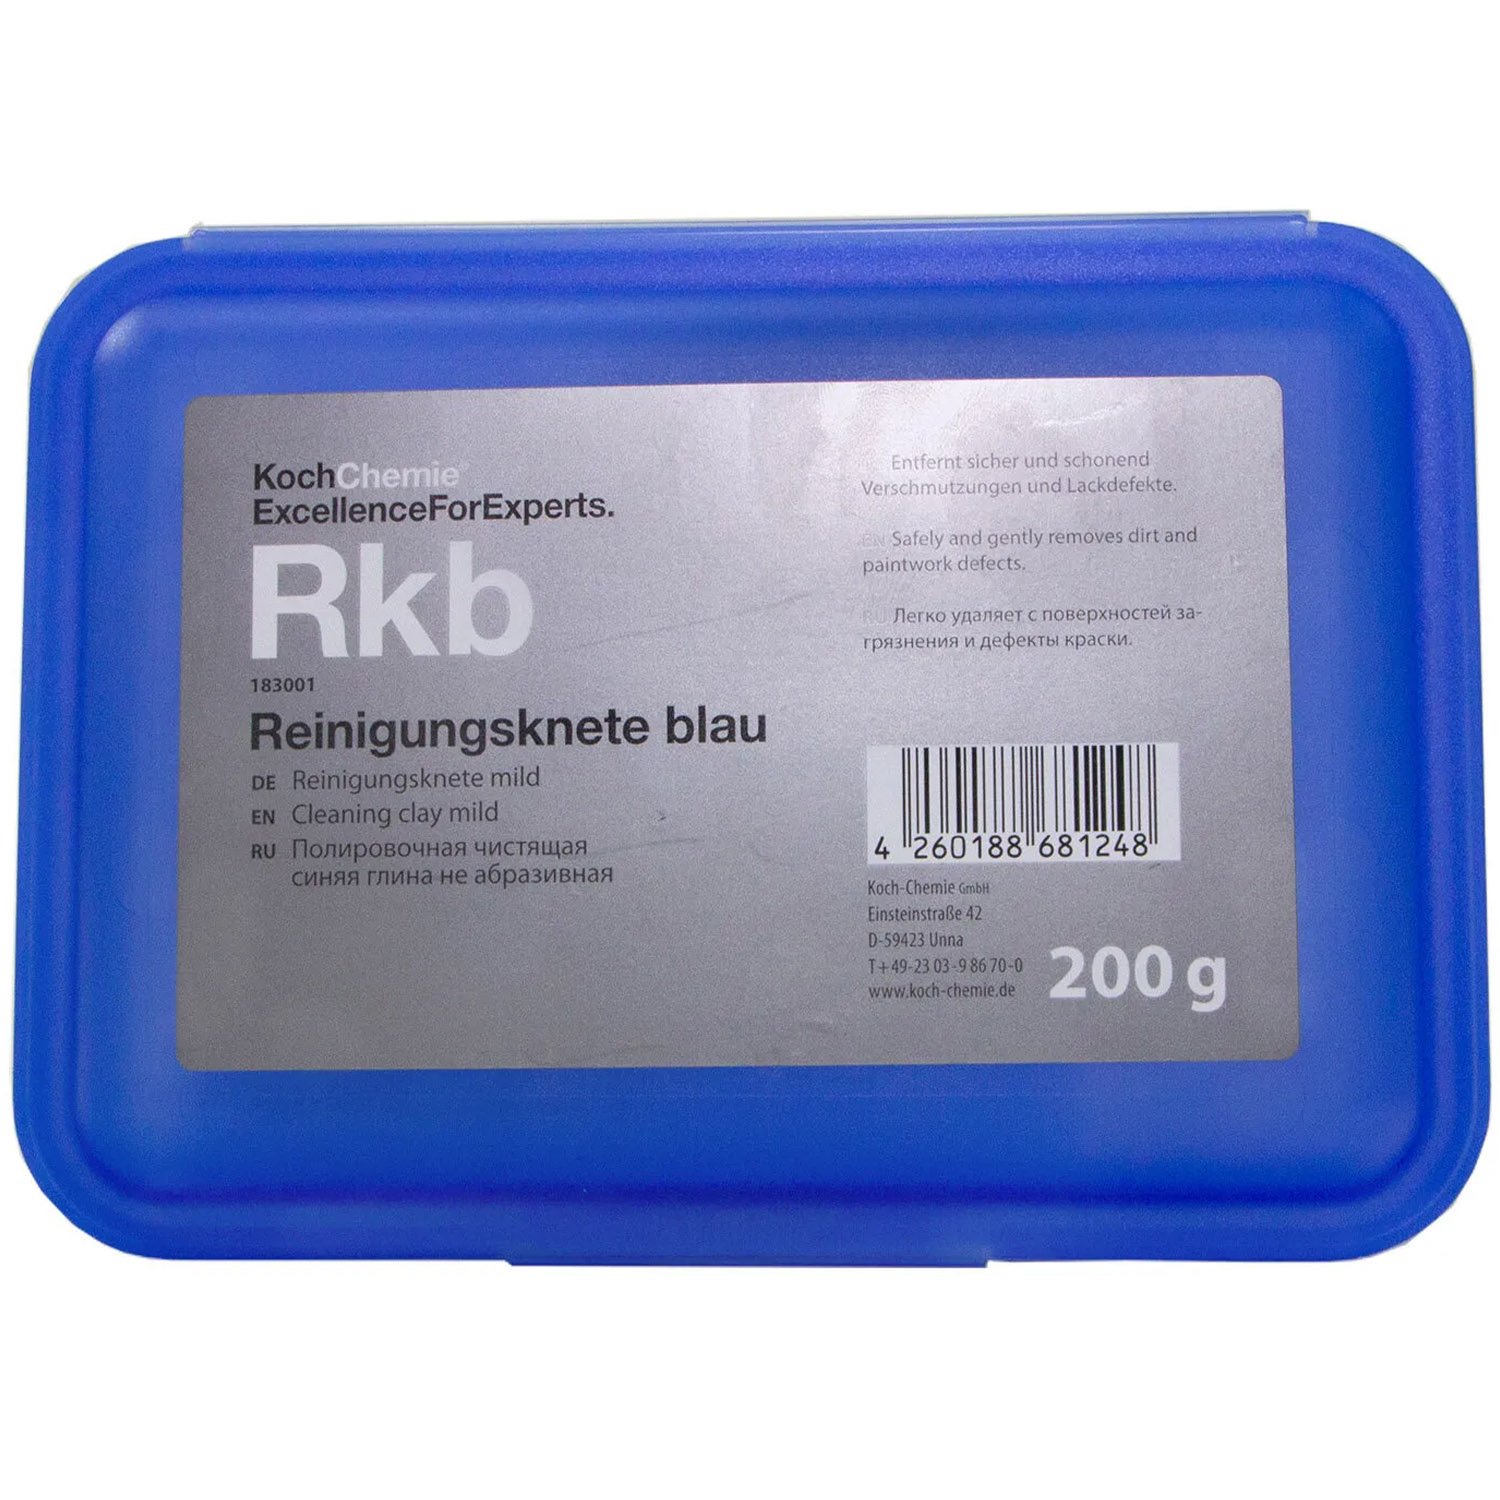 Глина Koch Chemie Reinigungsknete blau для очистки и полировки ЛФП - фото 2